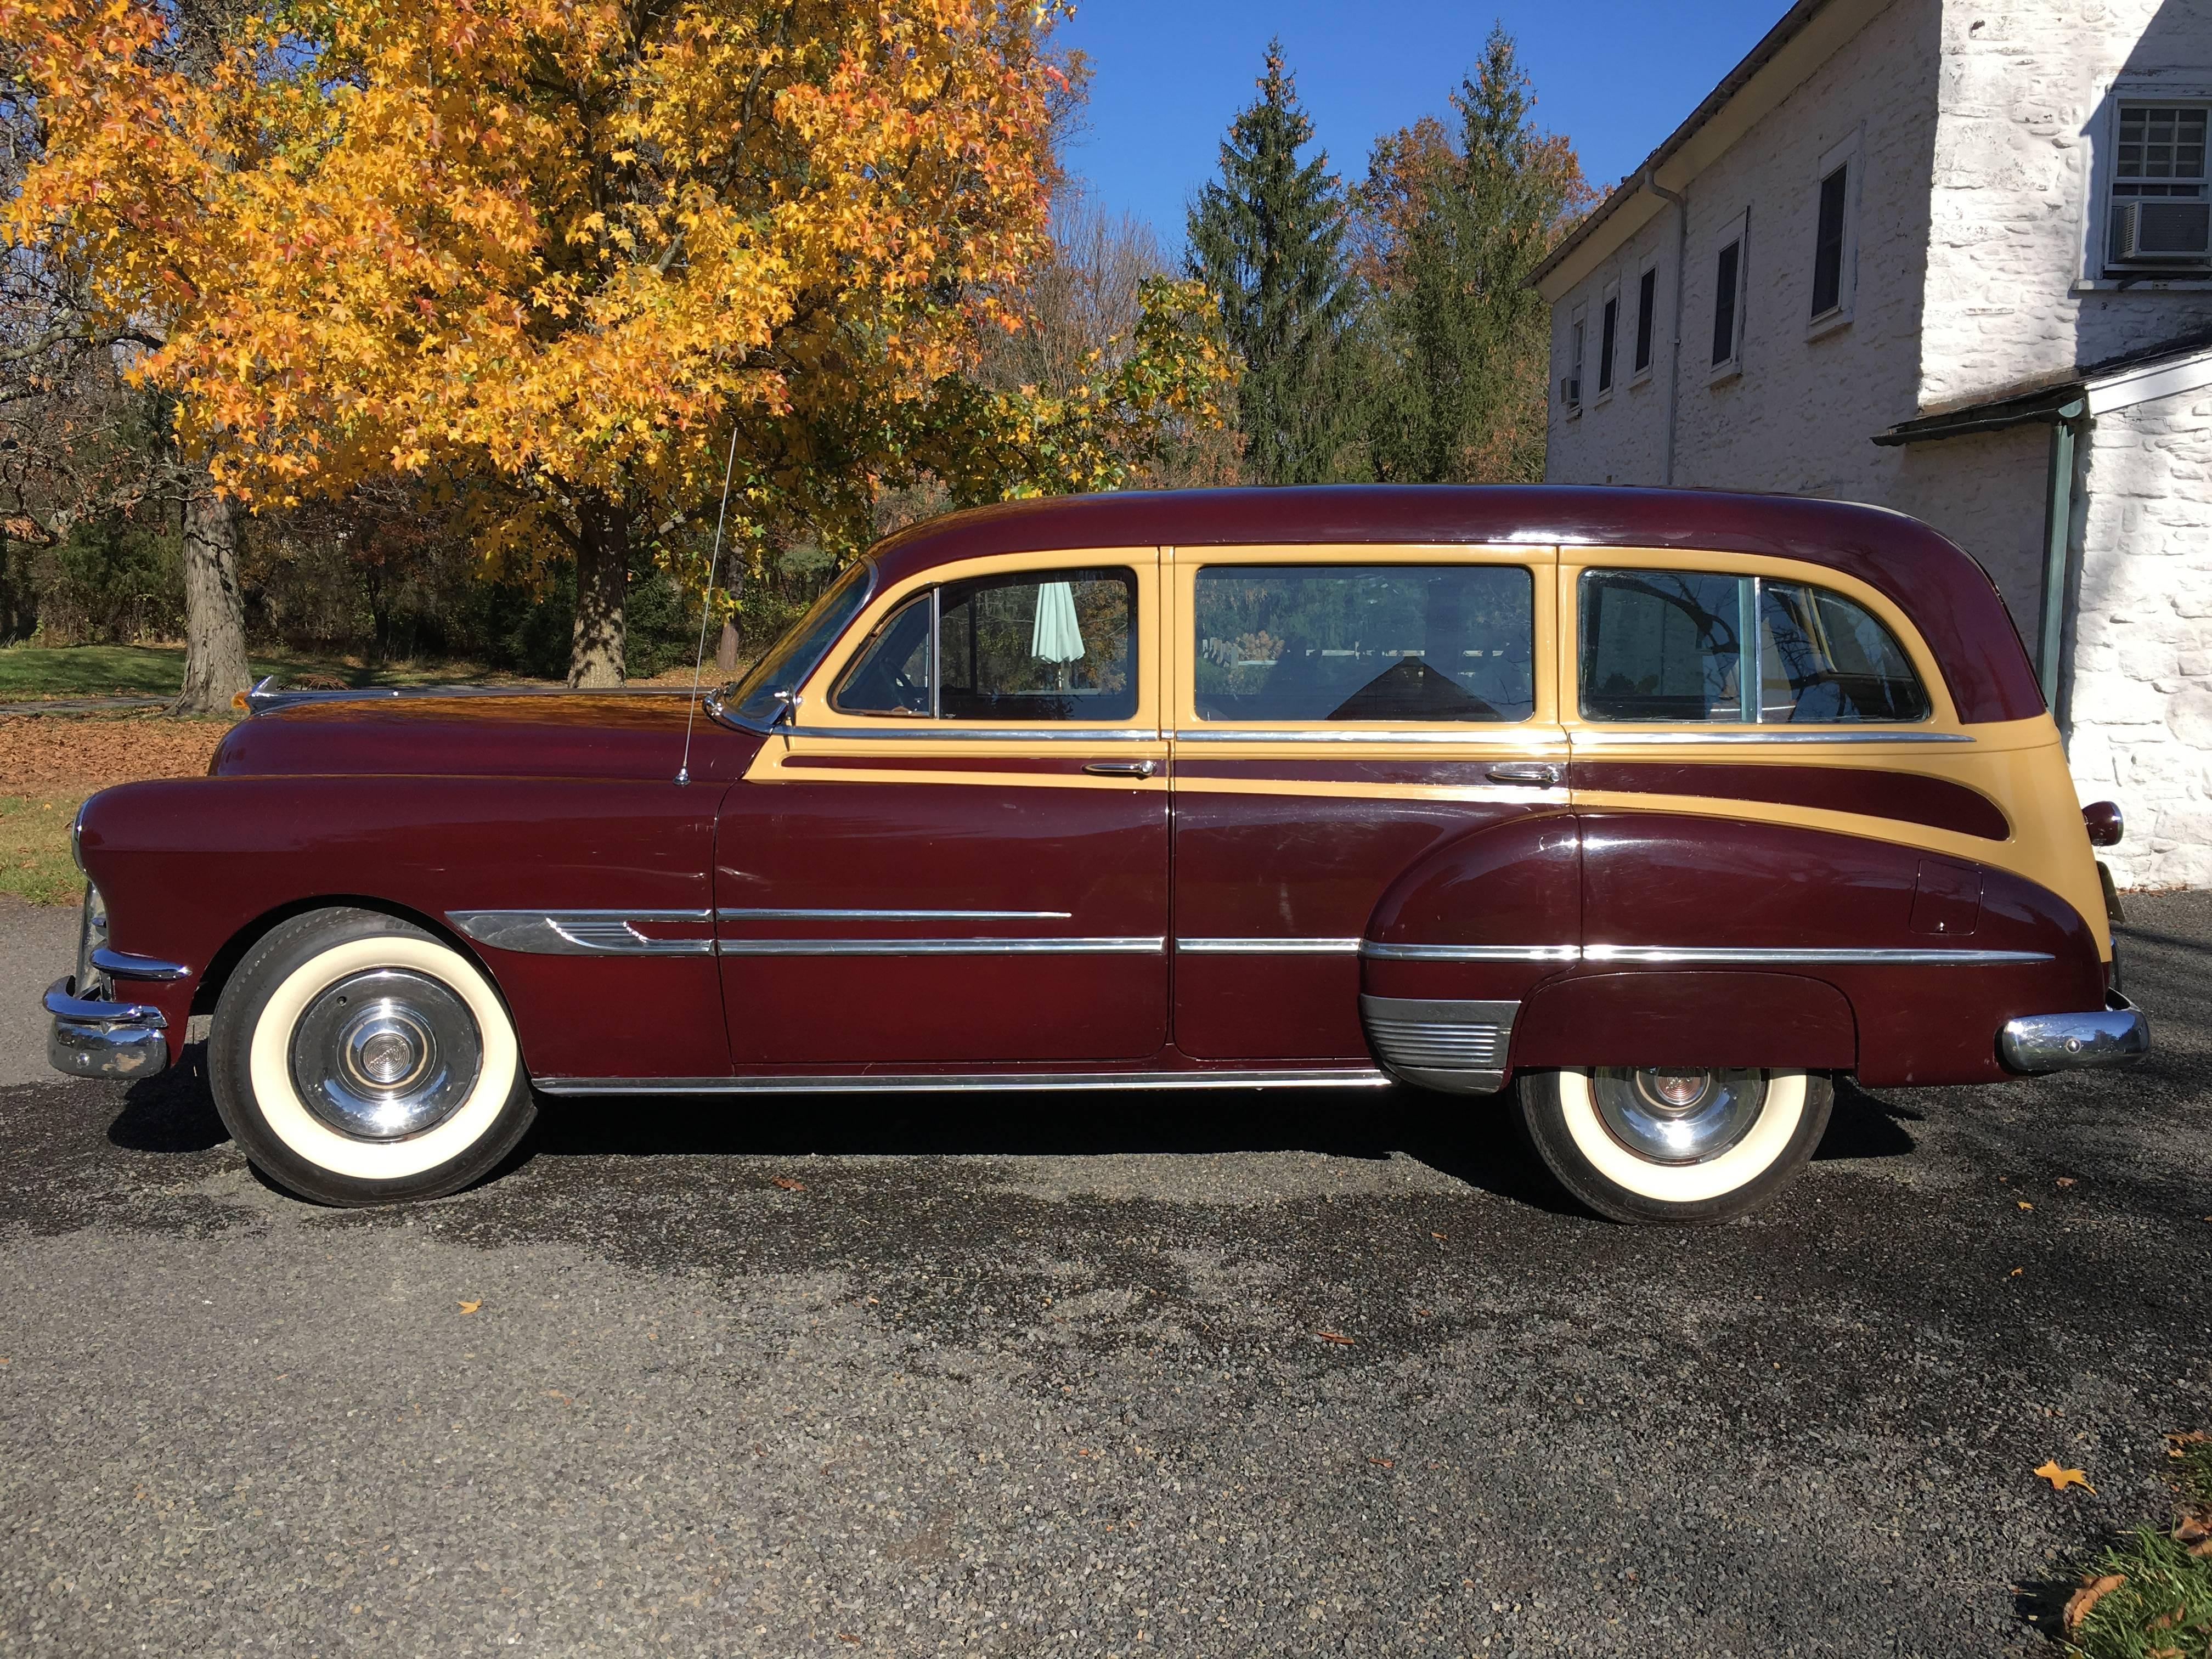 A beautiful and rare 1952 Pontiac 